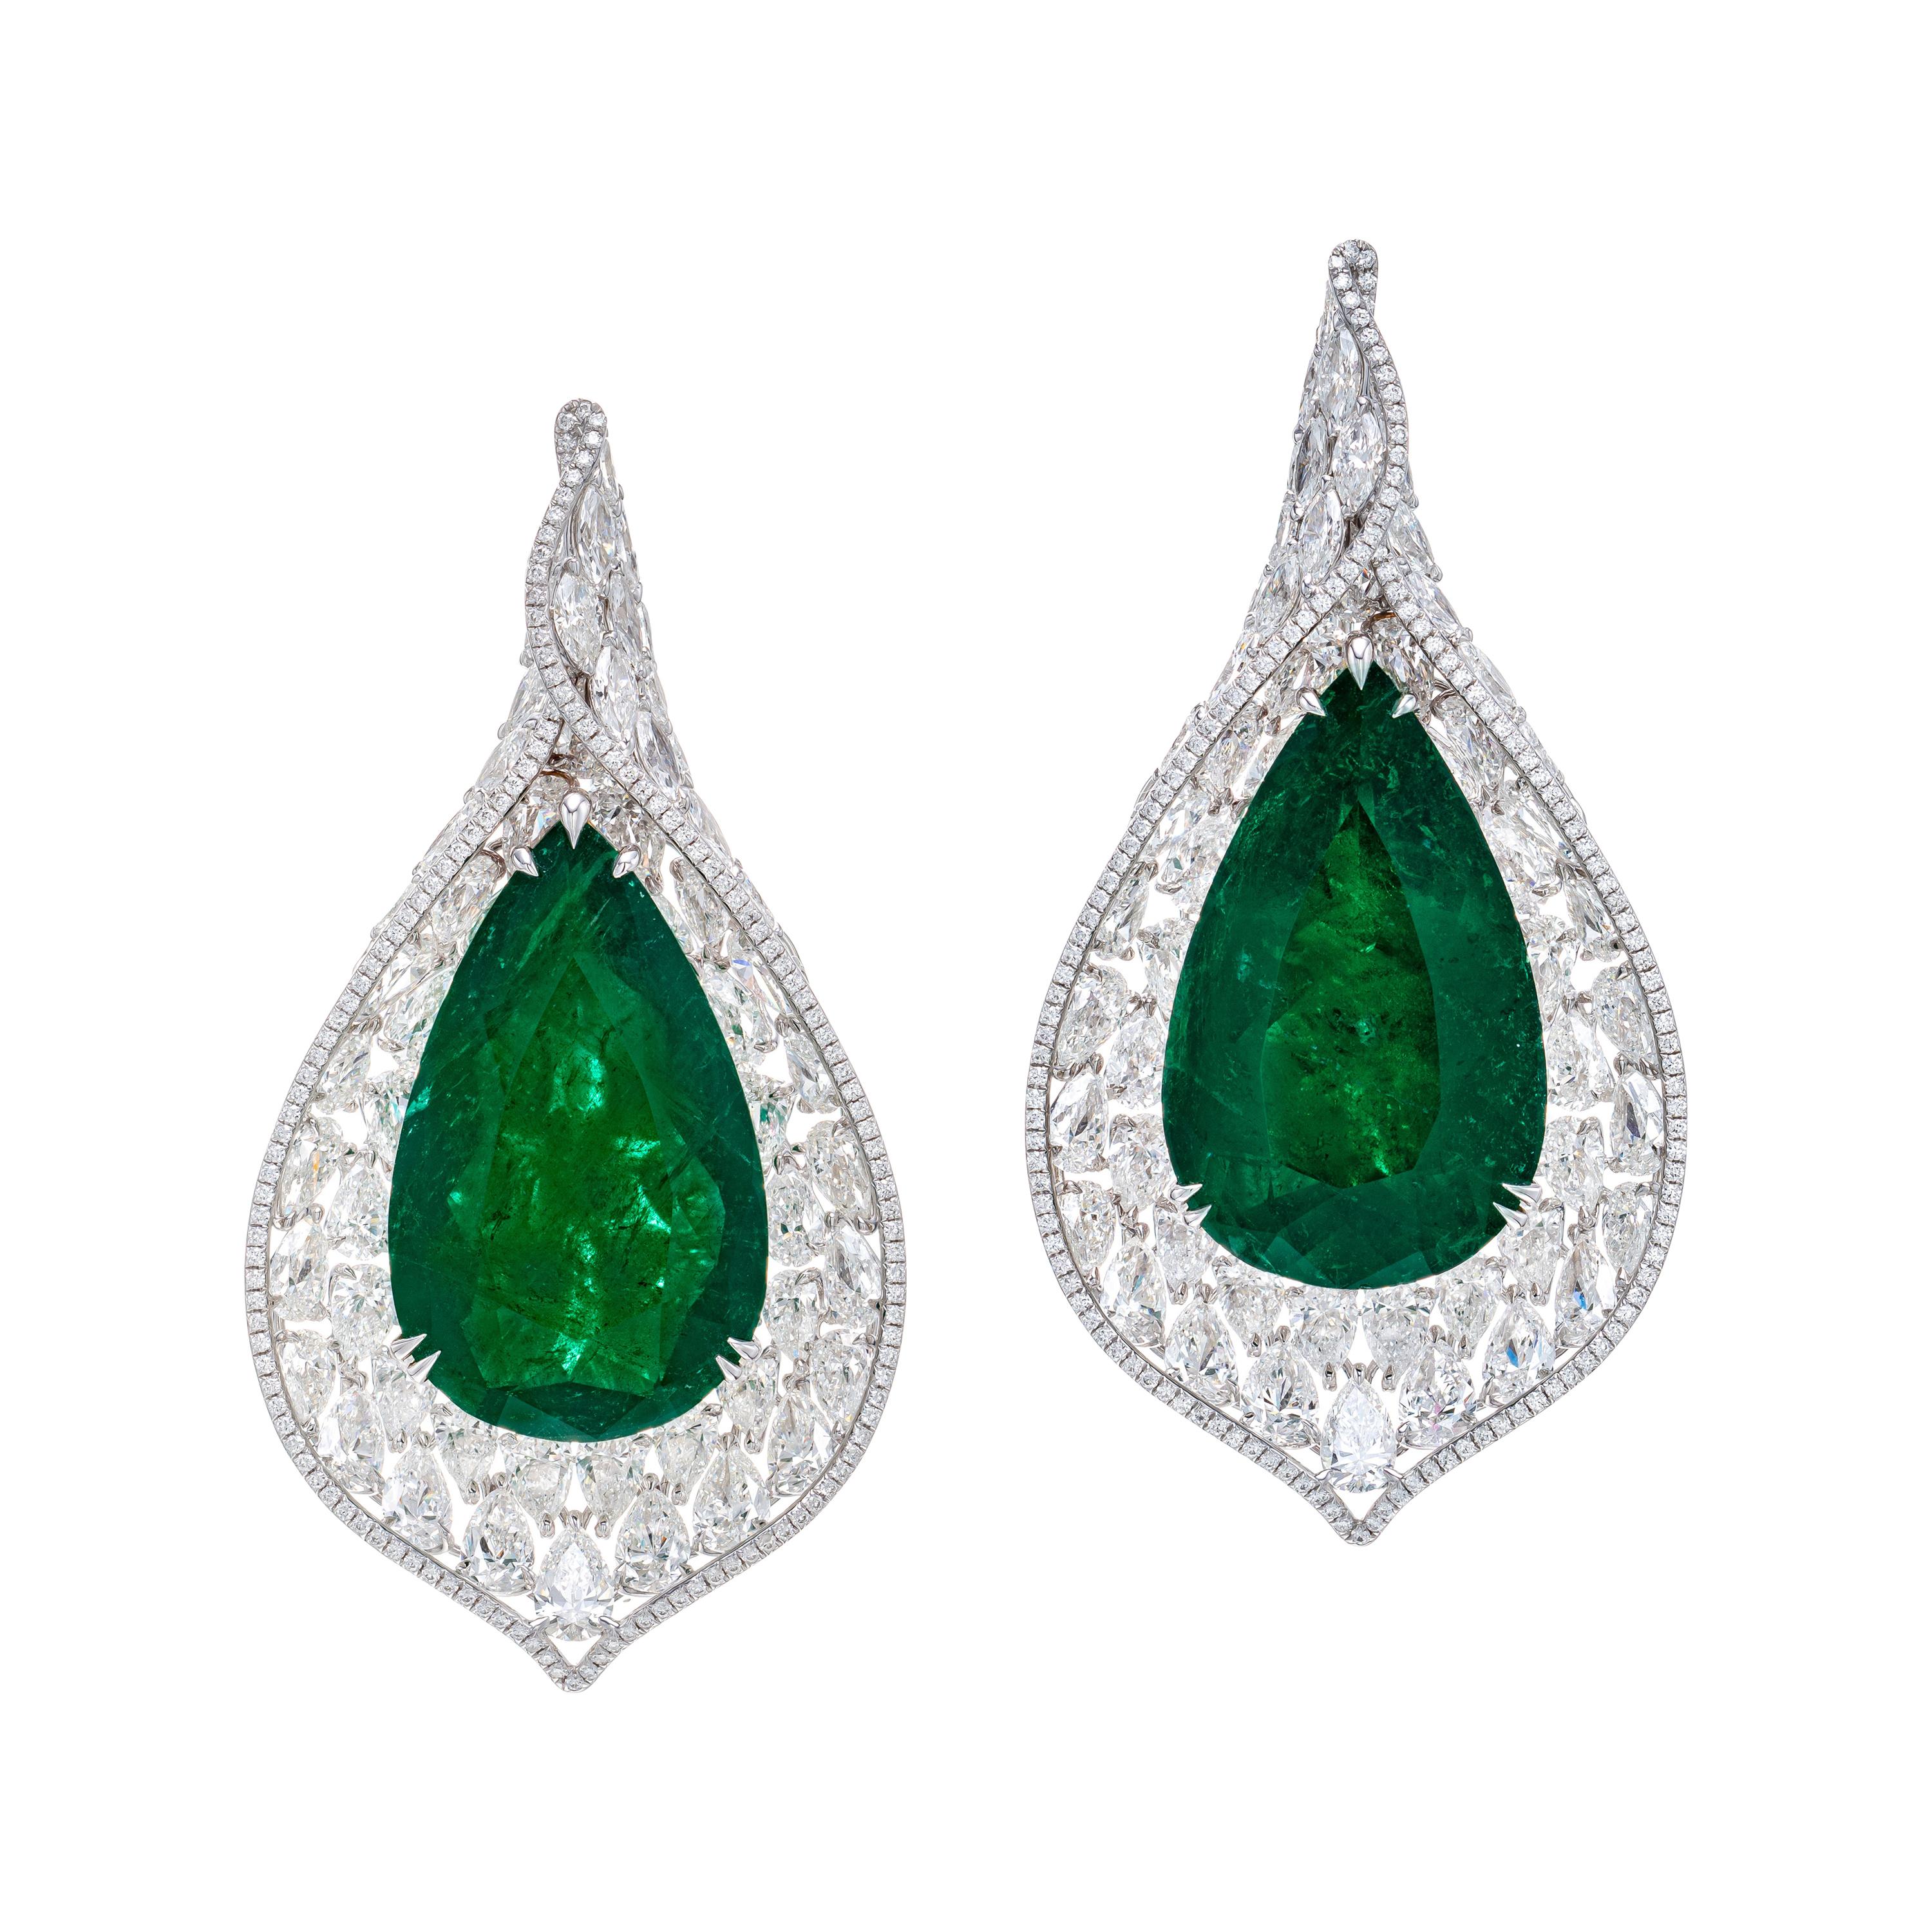 Gubelin Certified 65.97 Carat Colombian Emerald Diamond Earrings in 18K Gold